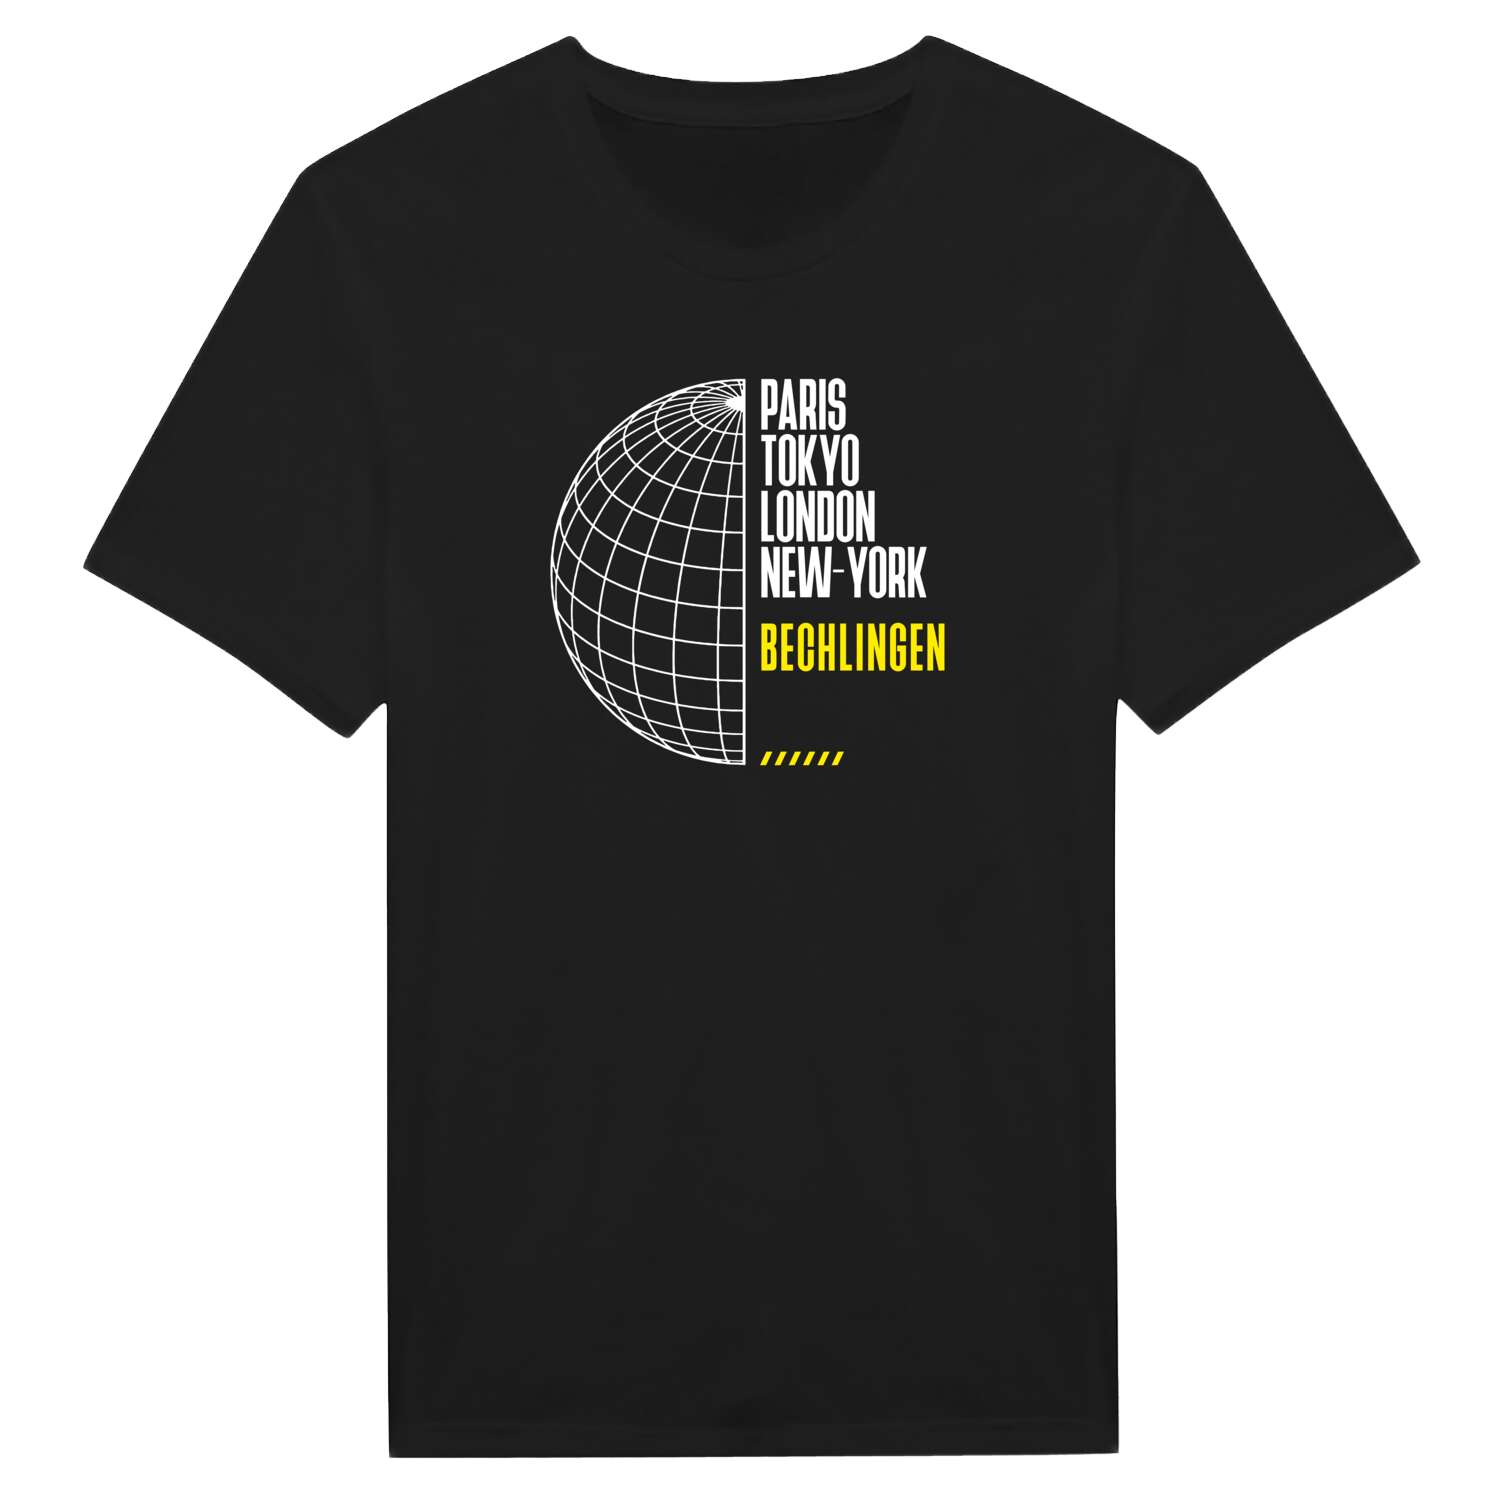 Bechlingen T-Shirt »Paris Tokyo London«